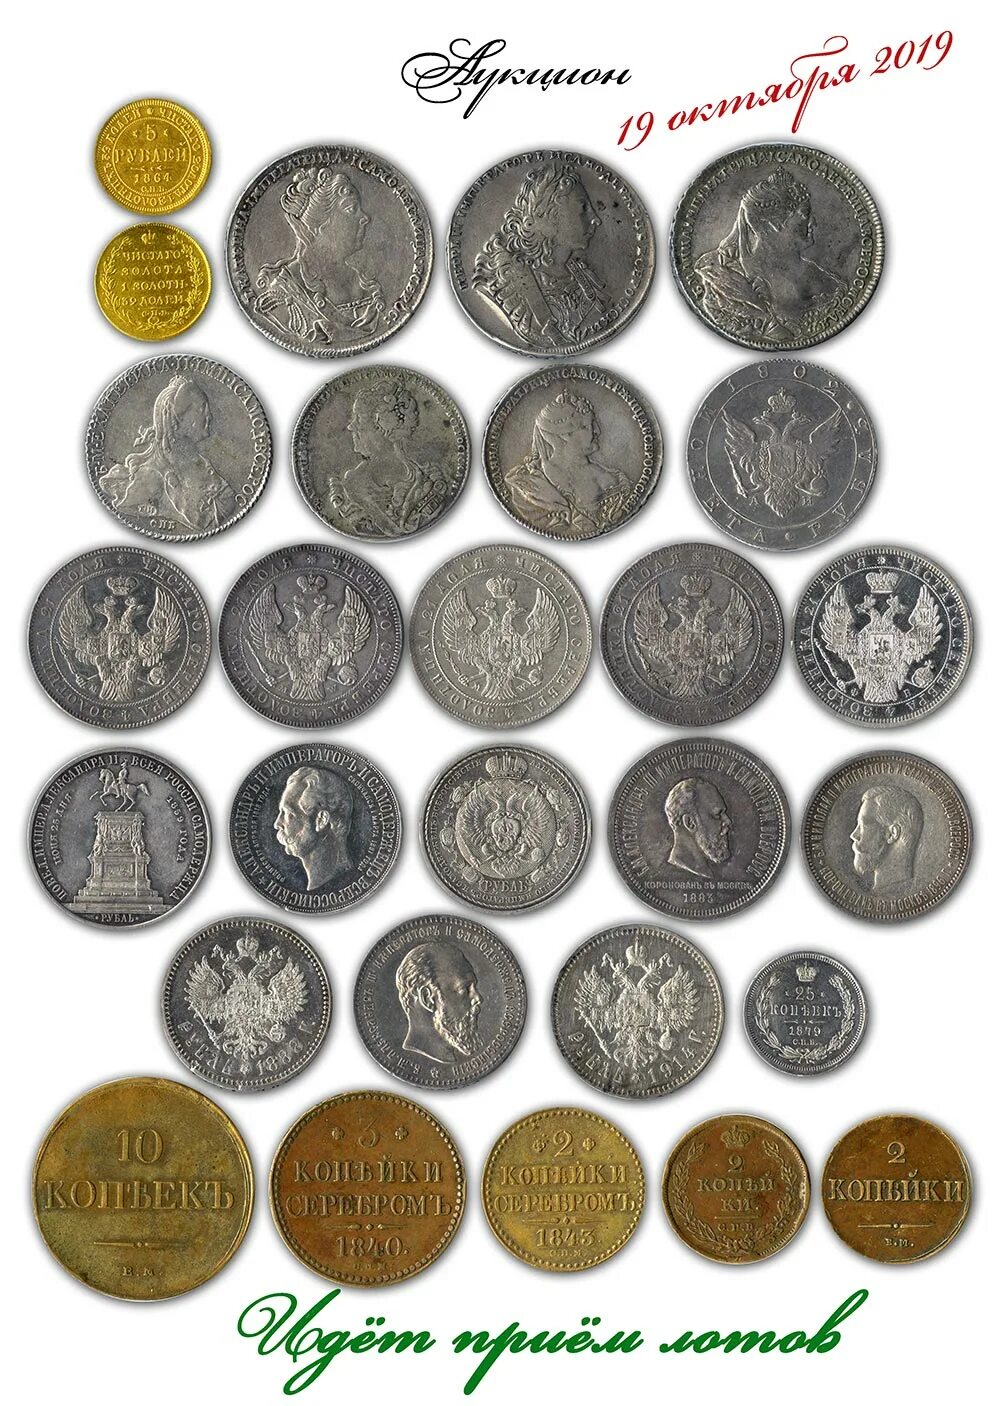 Аукцион монет. Conros аукцион монет. Аукцион старинных монет. Редкие монеты и купюры. Аукционы монет в россии